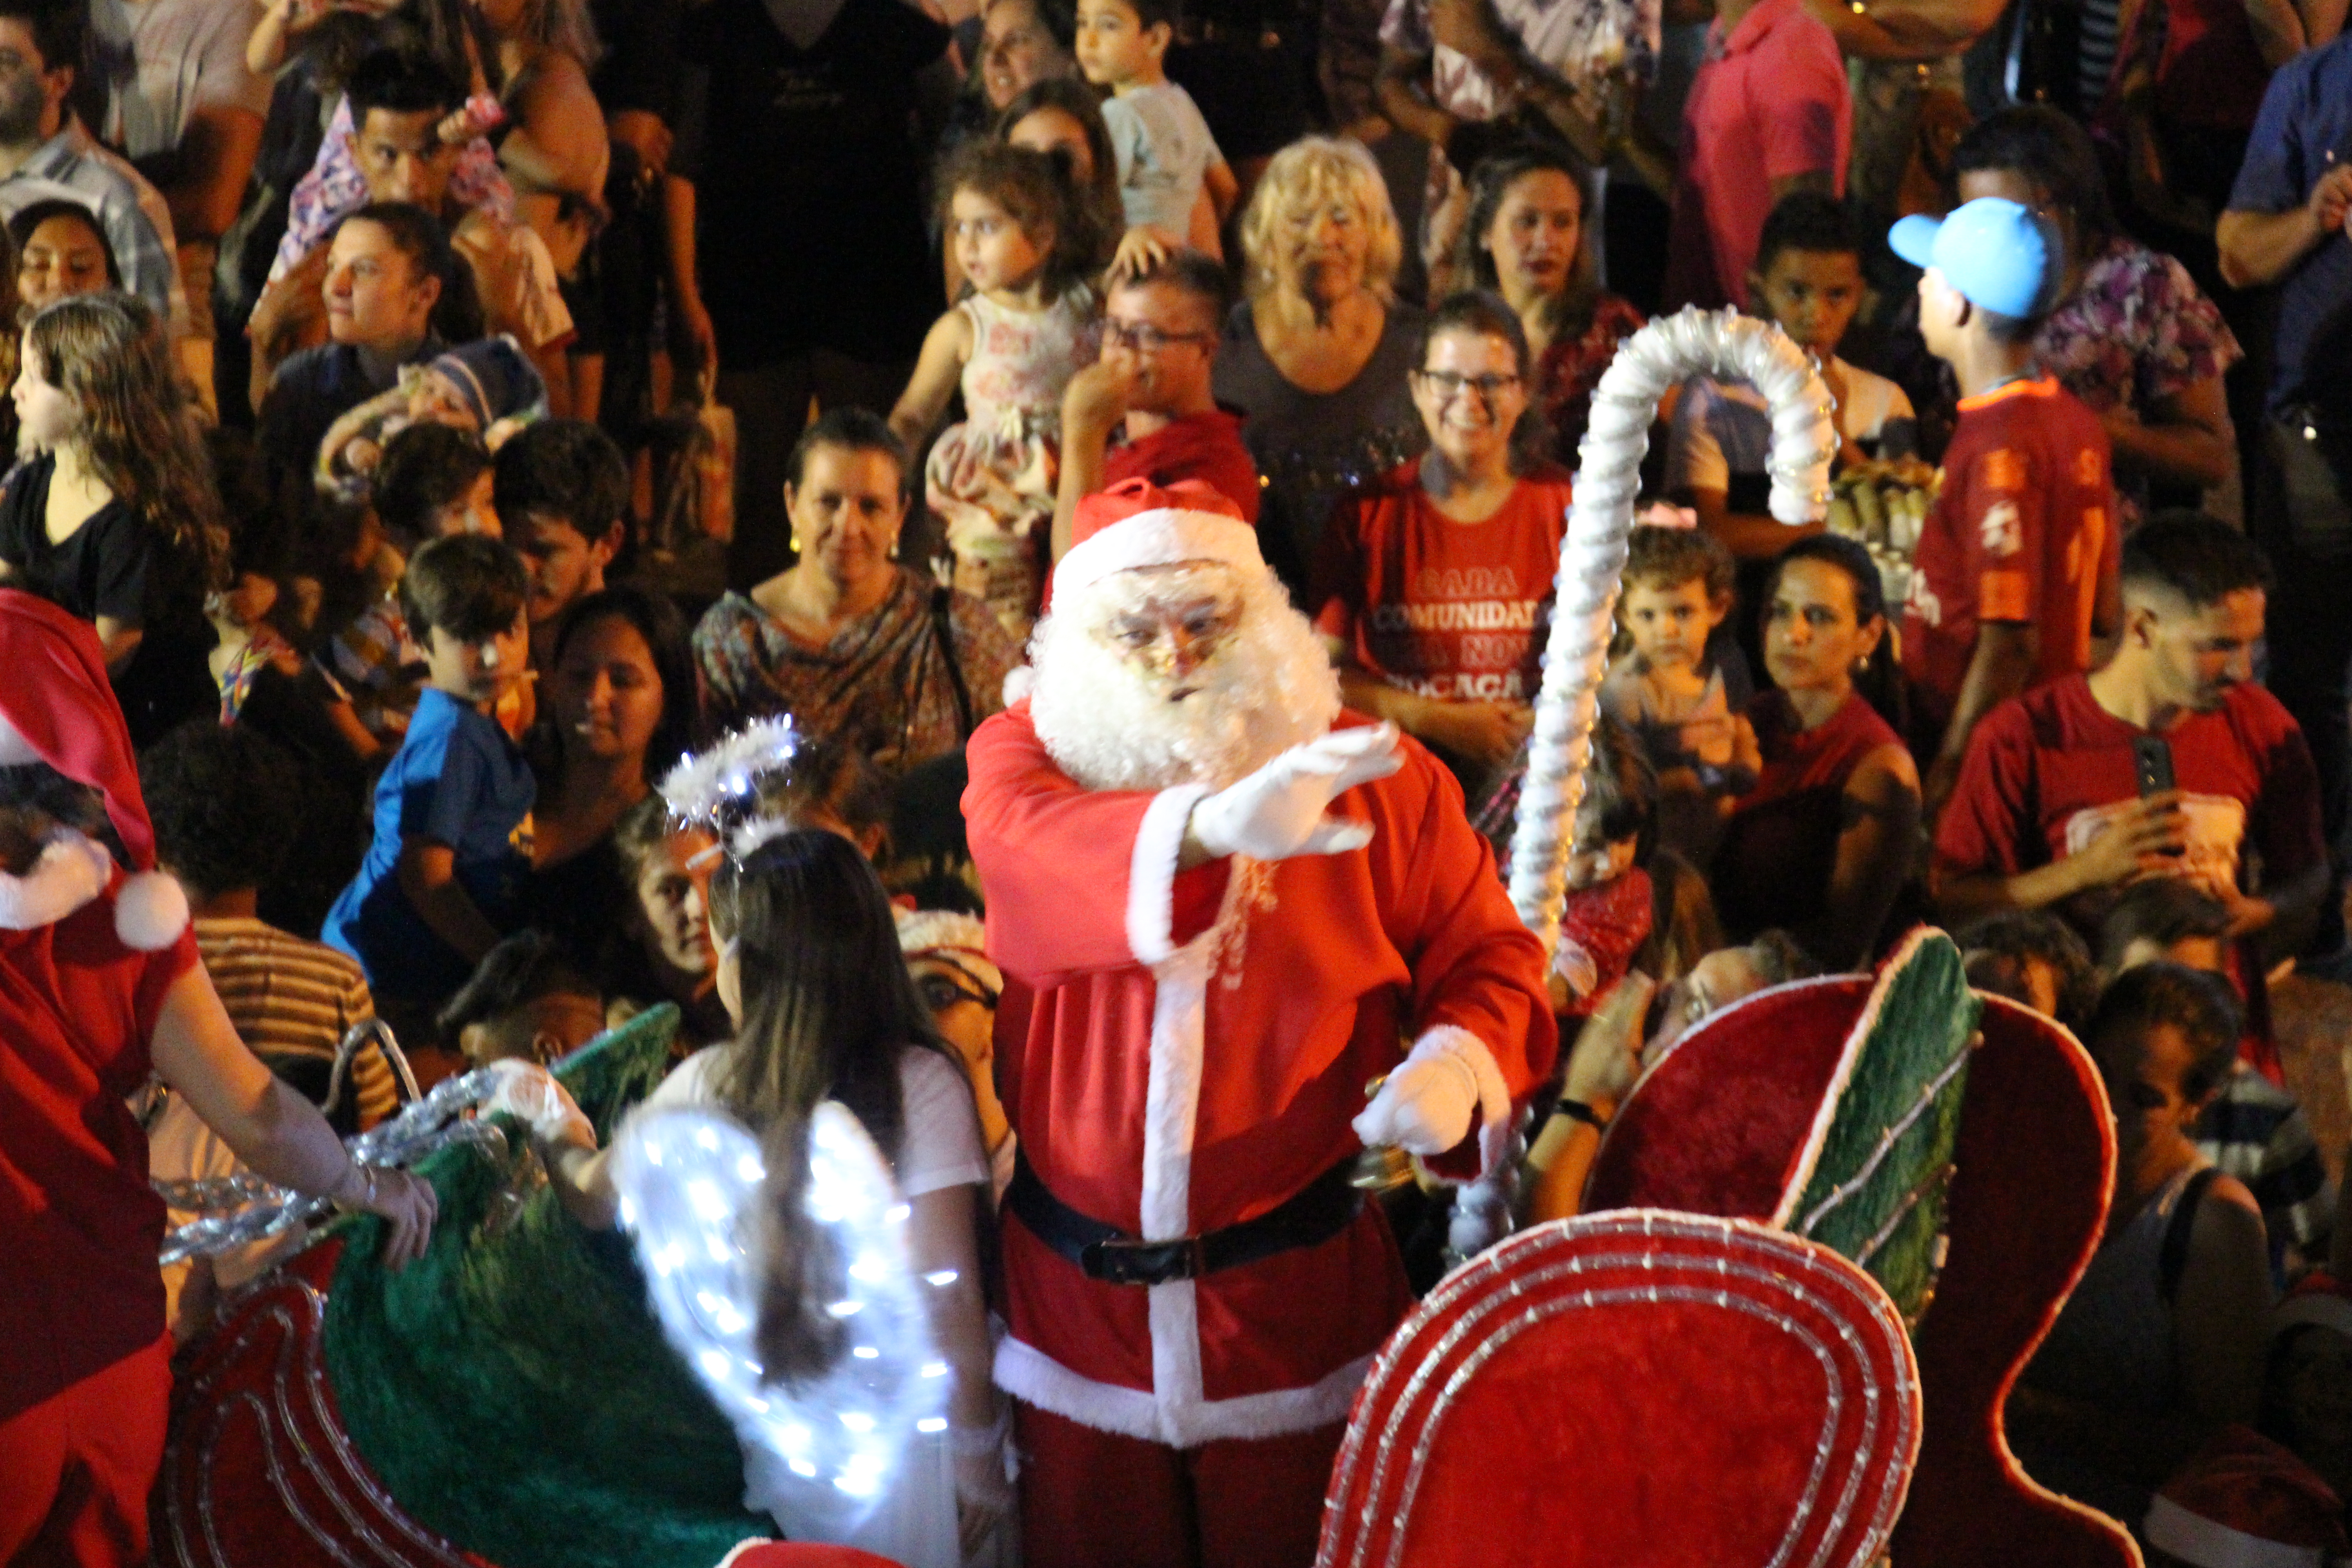 Em noite repleta de alegria, música e encantamento Papai Noel chega em Bombinhas.